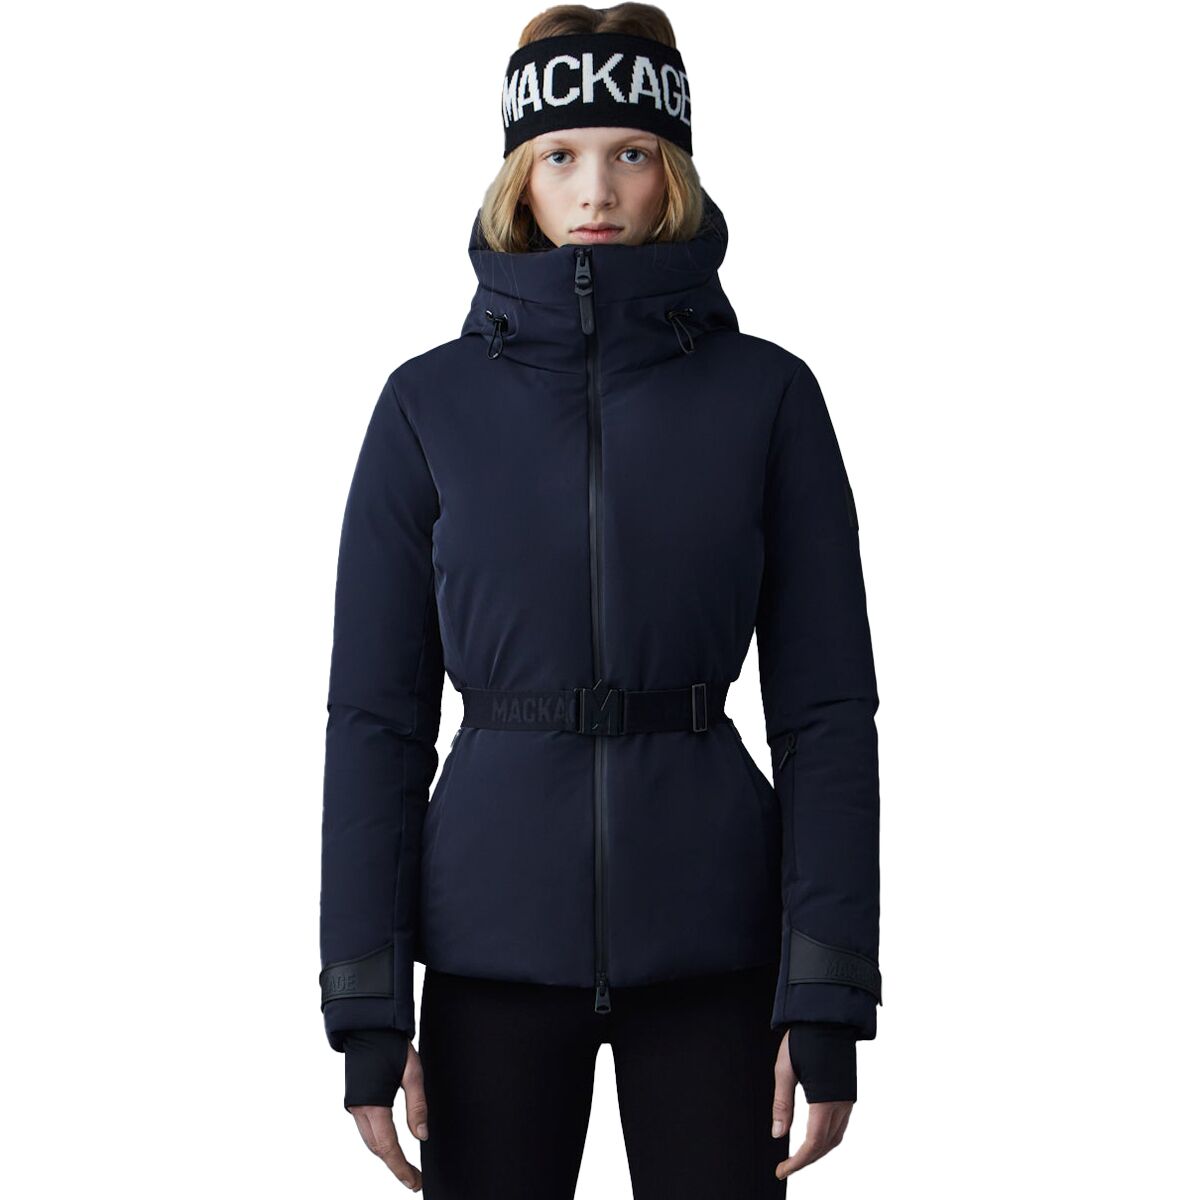 Mackage Krystal No-Fur Jacket - Women's